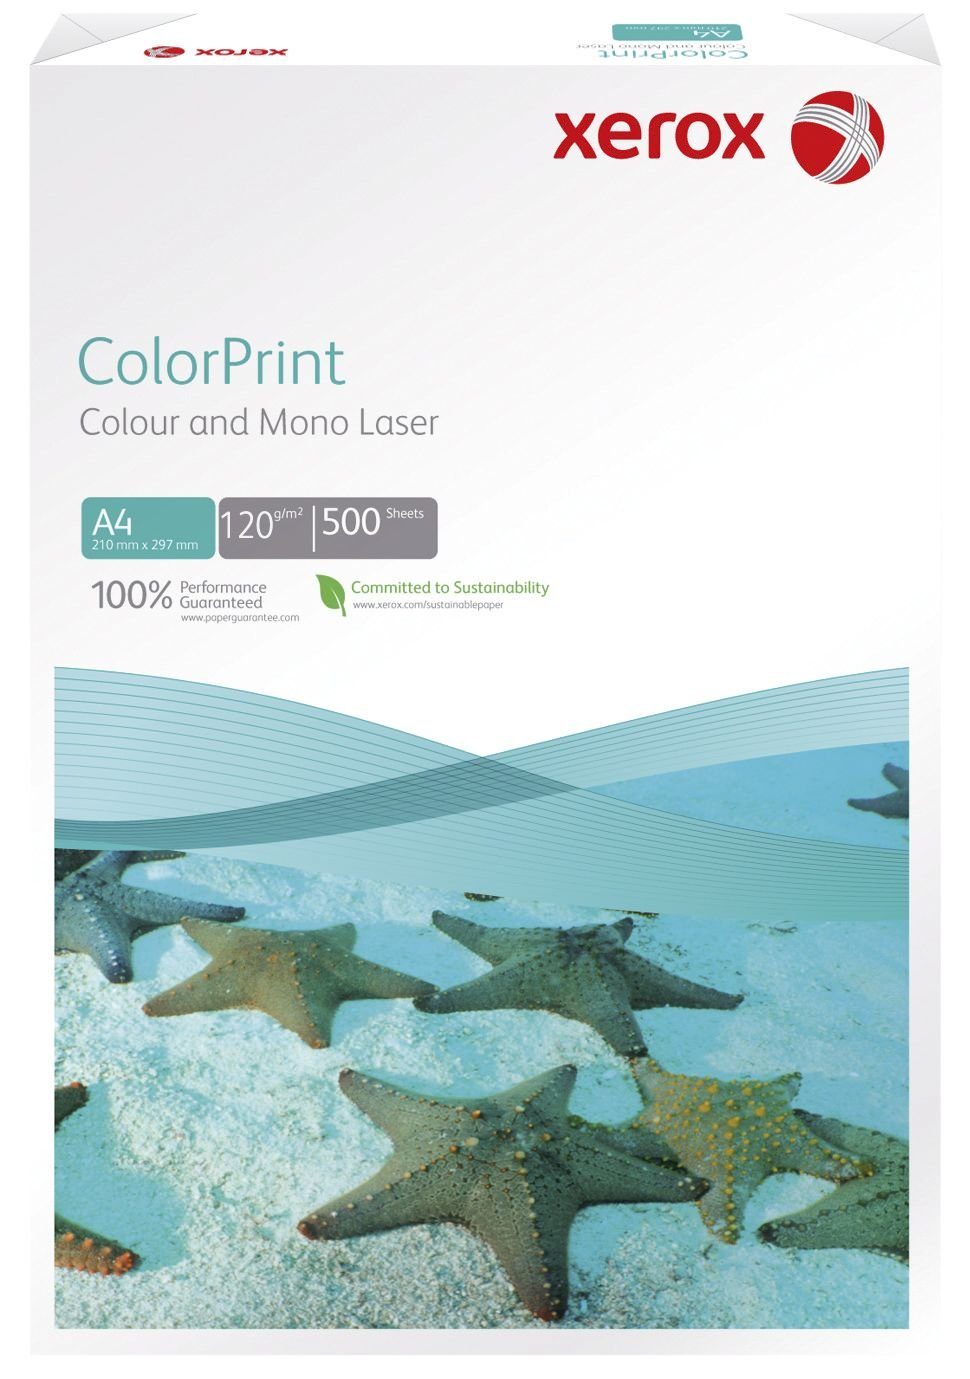 Xerox Druckerpapier ColorPrint - Blatt 120 A4, weiß, g/qm, 500